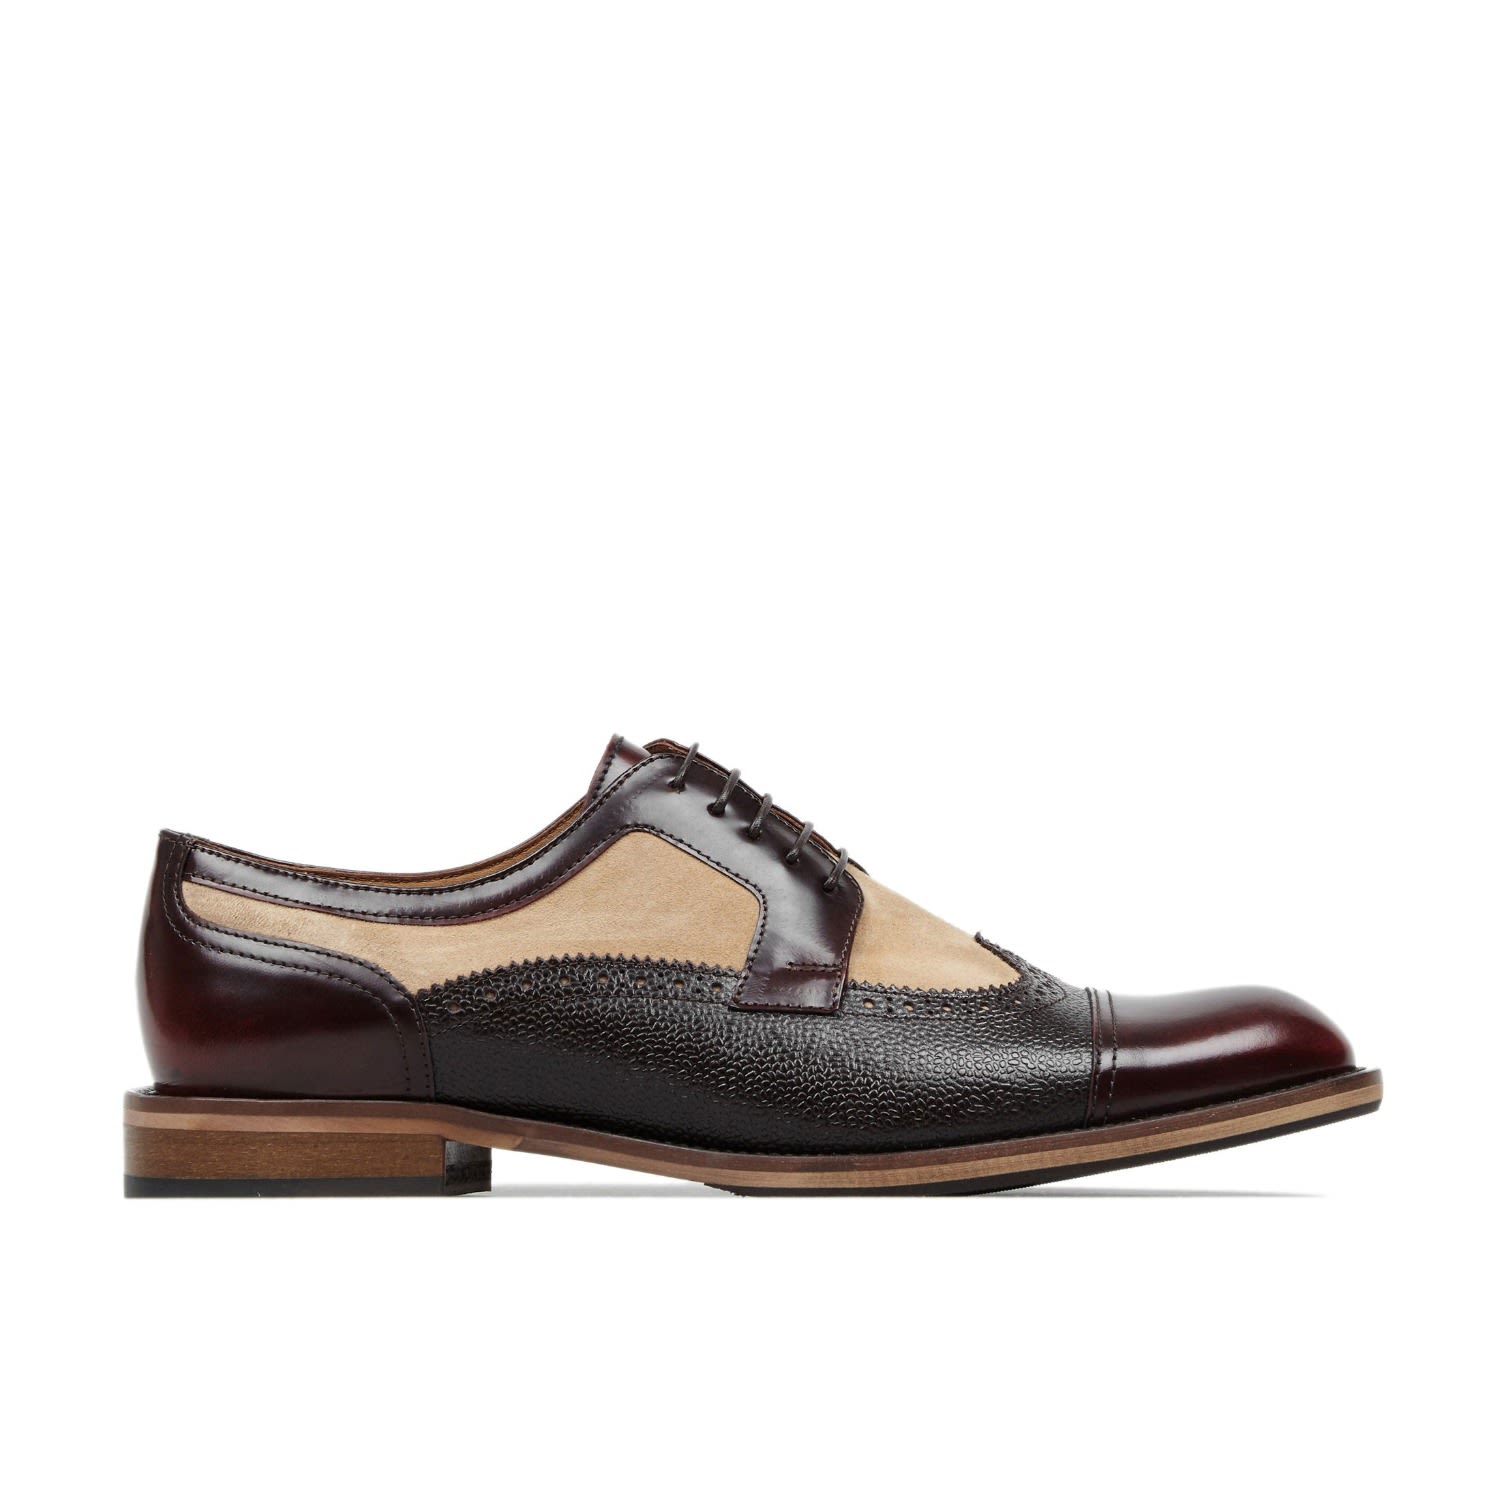 Brown / Neutrals Orlando - Burgundy, Beige, Dark Brown - Men’s Oxford Shoes 10 Uk Embassy London Usa